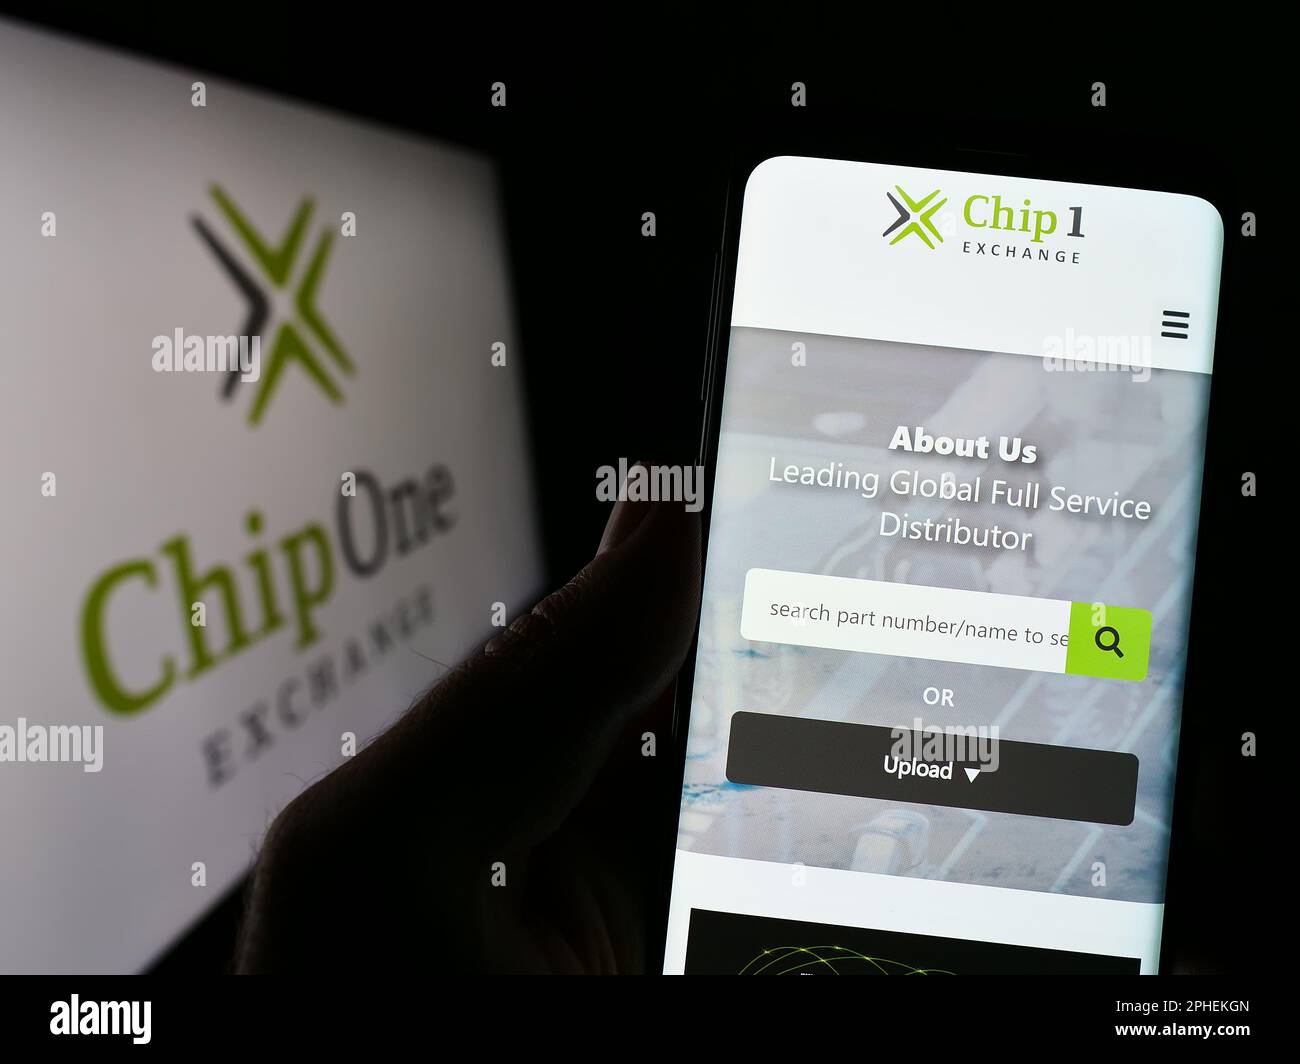 Personne tenant un téléphone portable avec la page web de la société de distribution allemande Chip 1 Exchange sur l'écran devant le logo. Concentrez-vous sur le centre de l'écran du téléphone. Banque D'Images